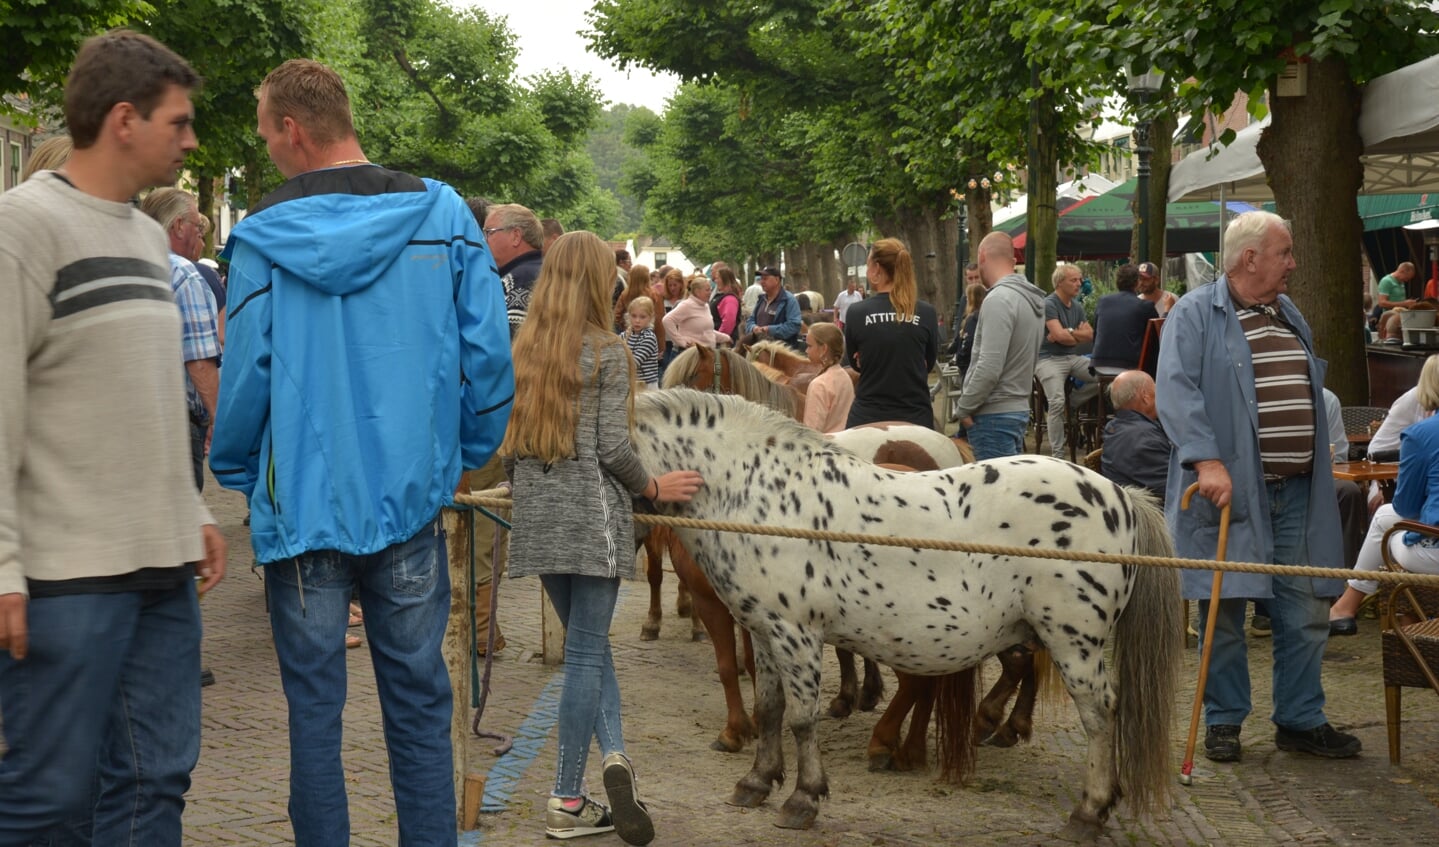 Folklore en handjeklap. De Paardenmarkt trekt jaarlijks bezoekers uit de hele regio. Foto: Nelleke de Vries